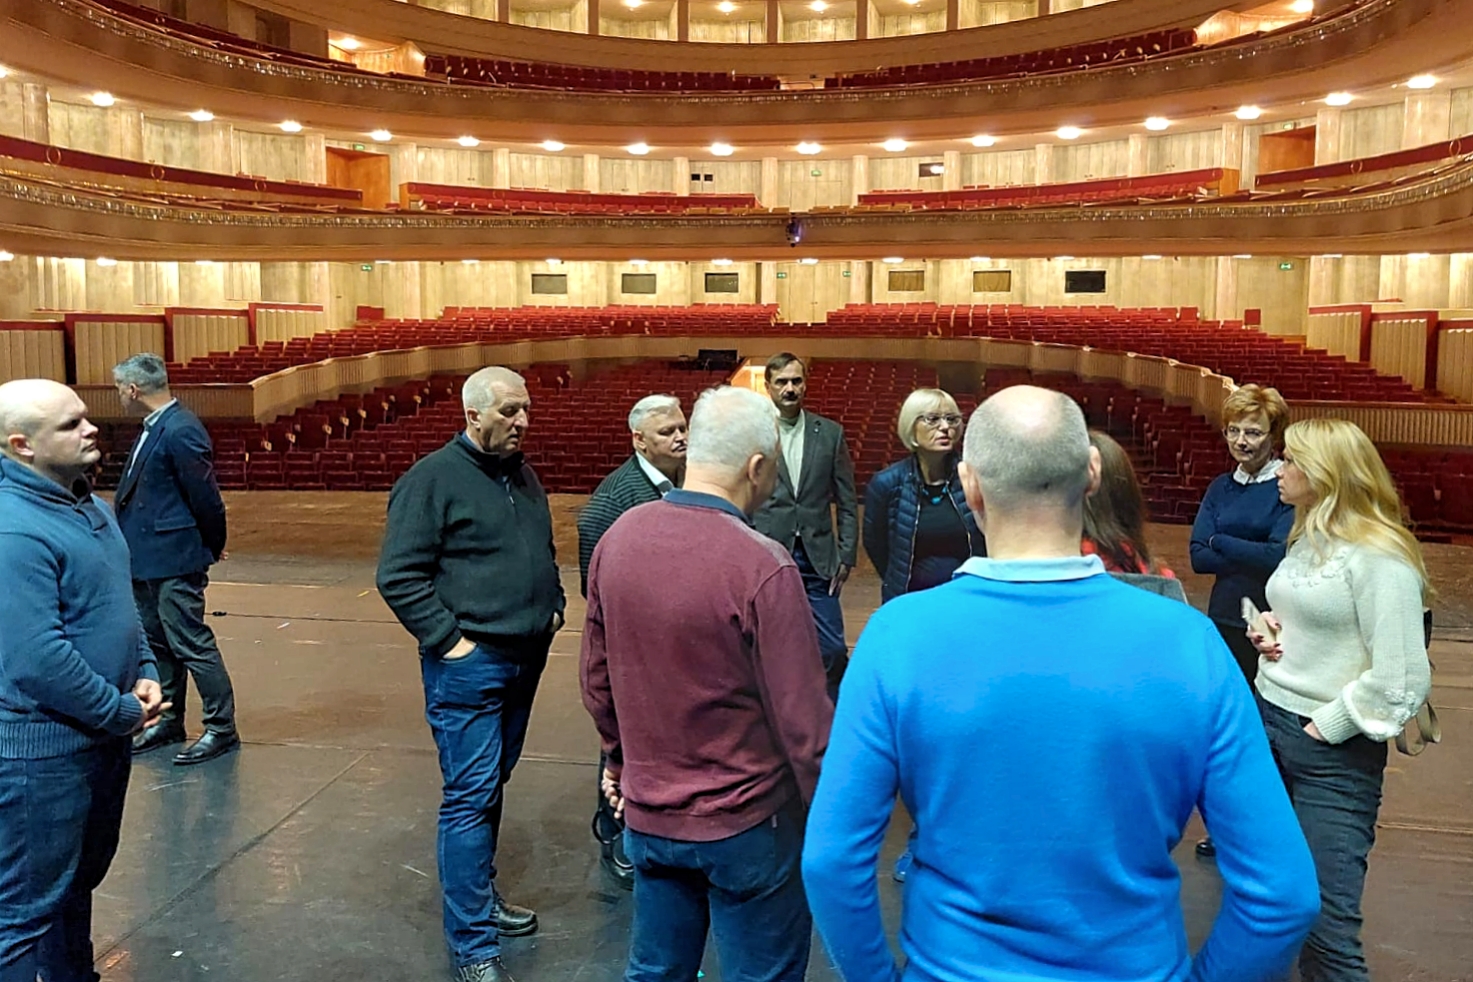 Litewska delegacja podczas wizytowania Opery Narodowej. Grupa osób stojąca na scenie opery w trakcie omawiania warunków ochrony przeciwpożarowej, zastosowanych rozwiązań technicznych i organizacyjnych. 